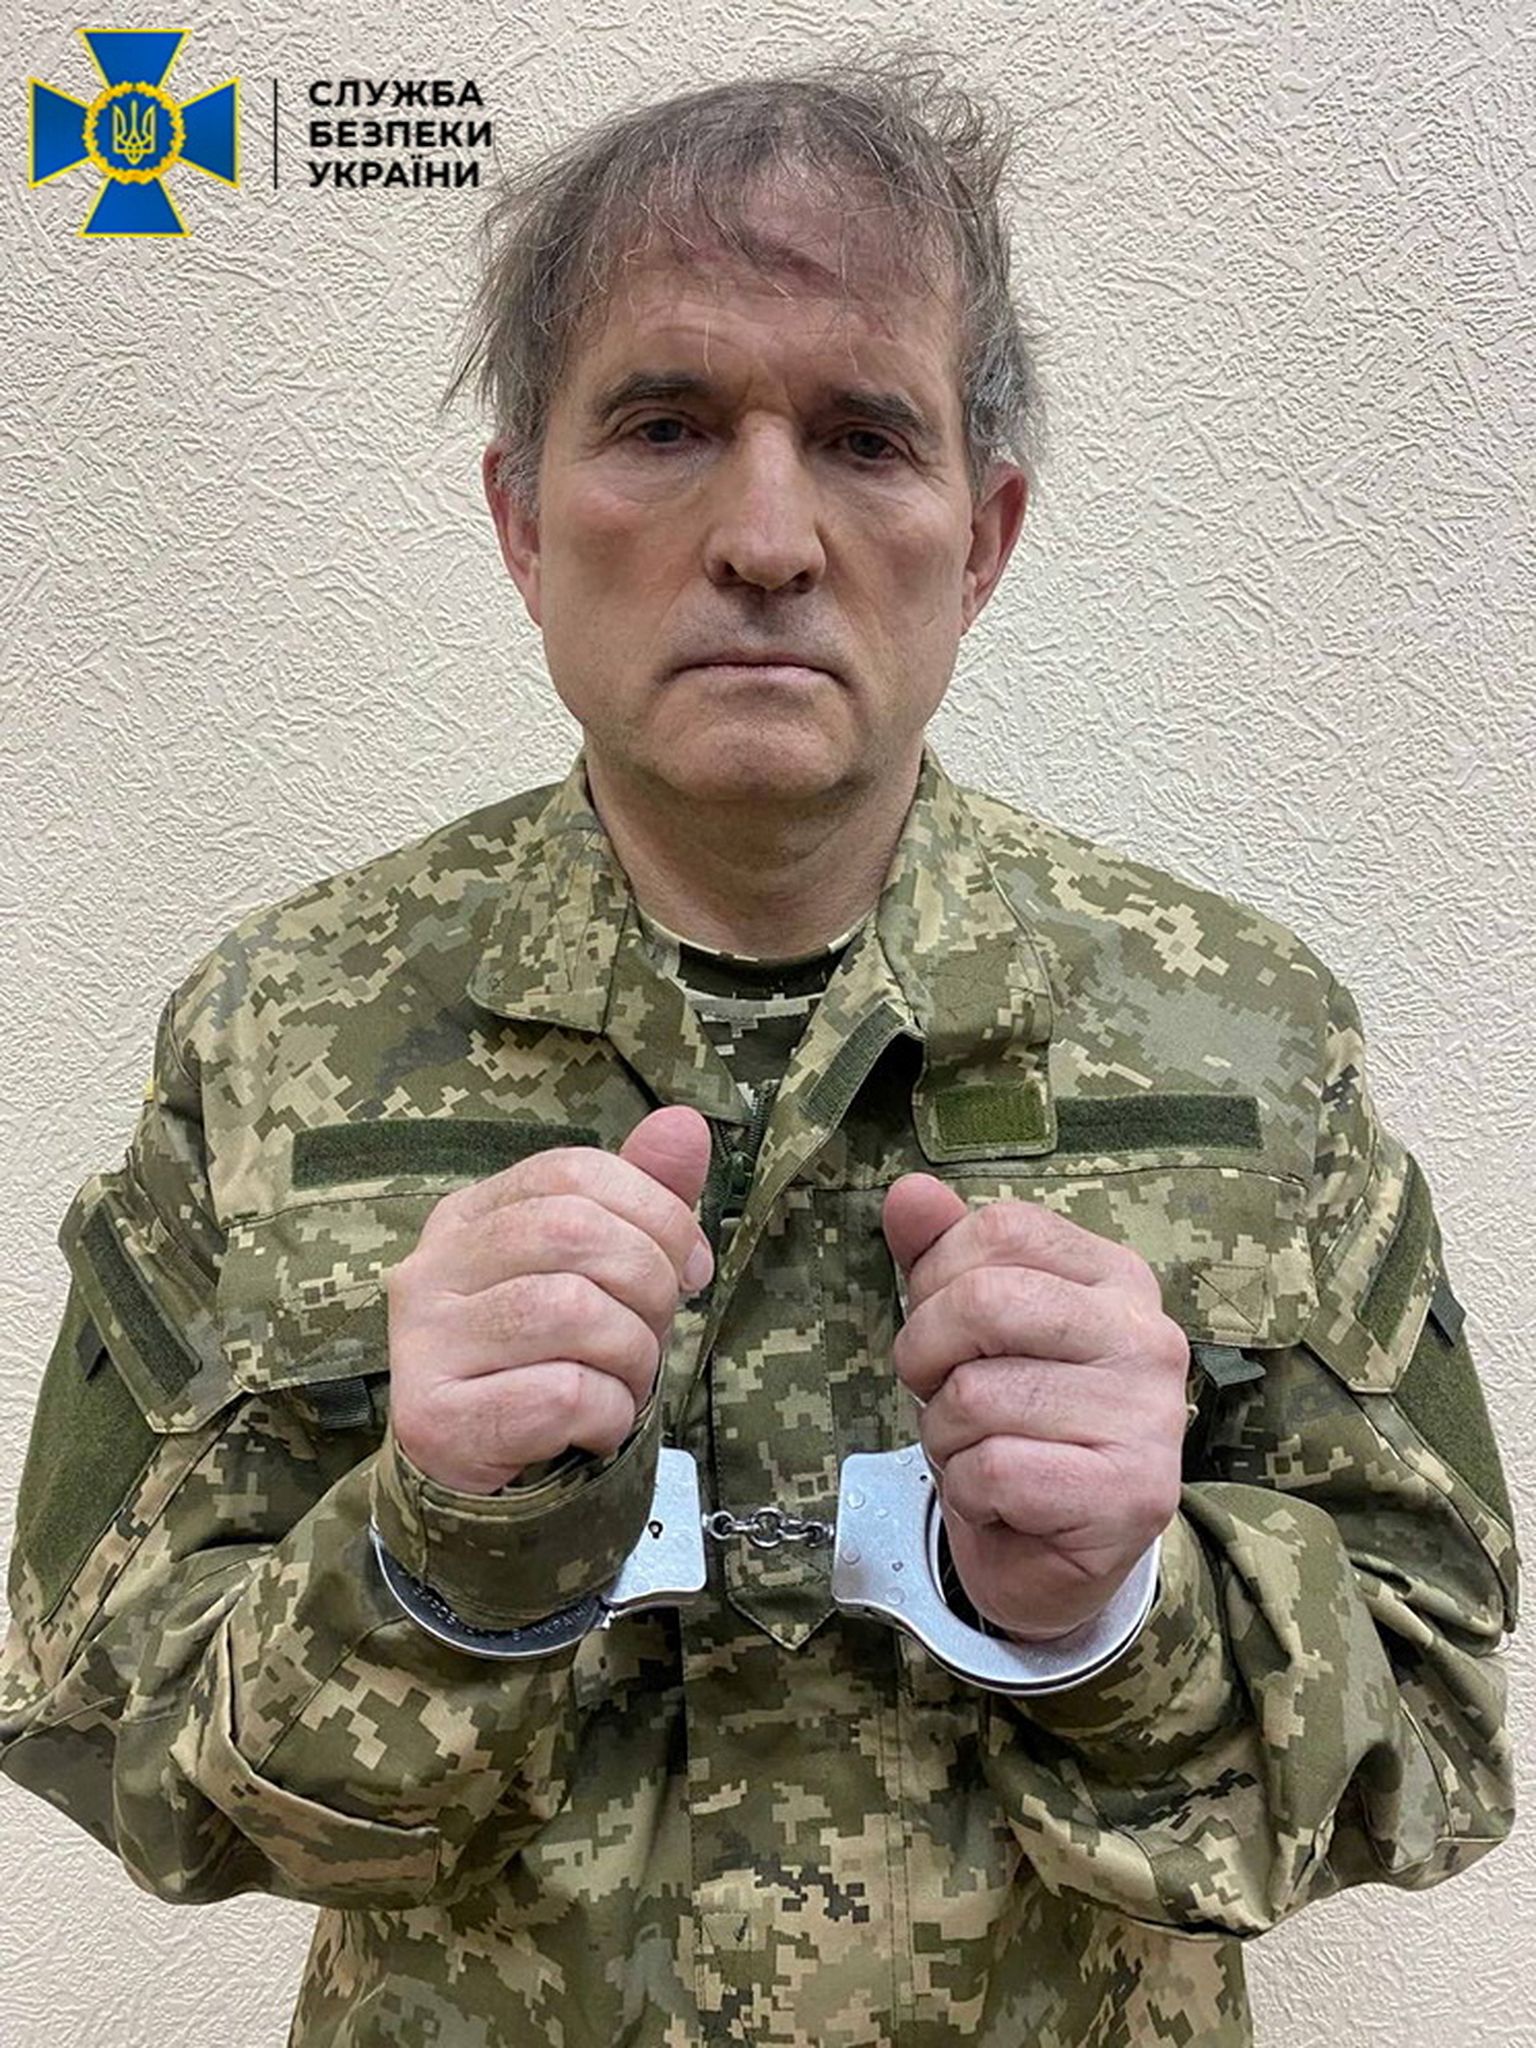 "Кум Путина" Виктор Медведчук после задержания в Украине